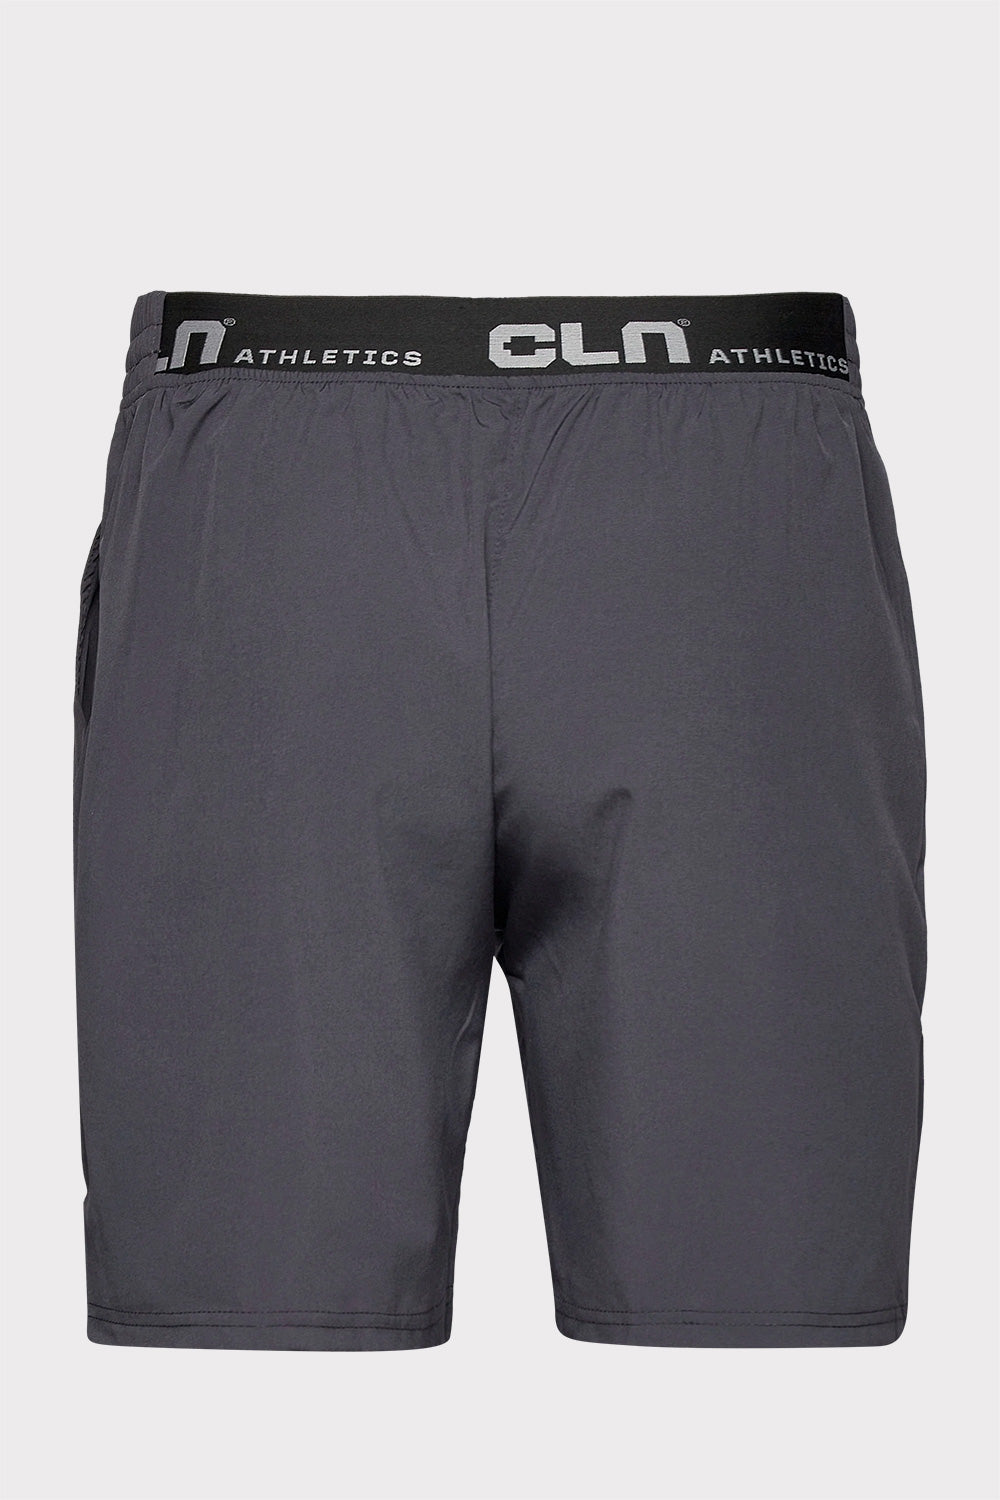 CLN Transform Shorts - Grafite